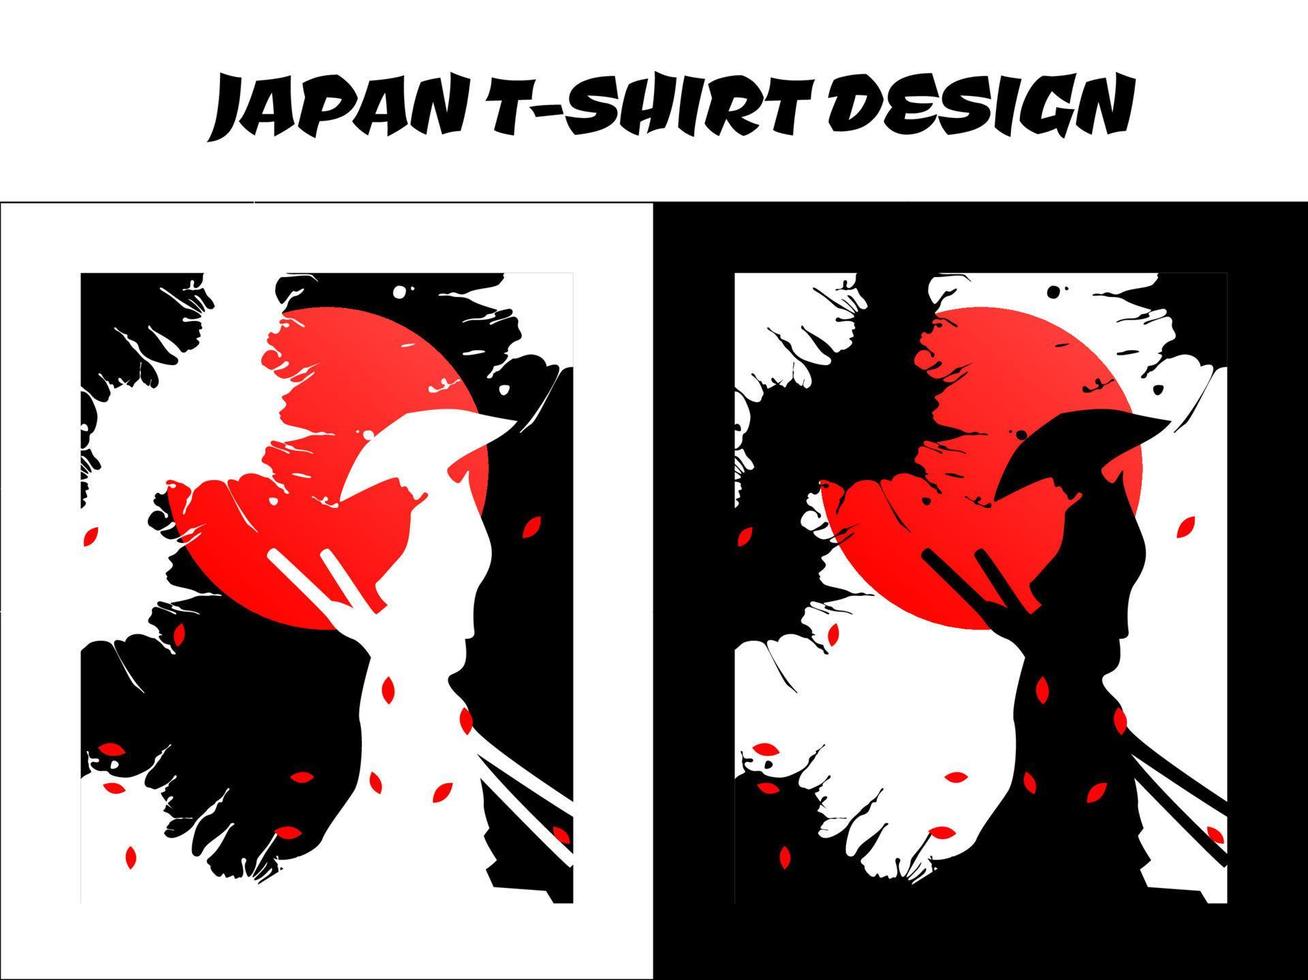 conception de t-shirt japonais, vecteur de samouraï de silhouette au japon pour le concept de t-shirt de conception, illustration vectorielle de samouraï masculin, samouraï de silhouette